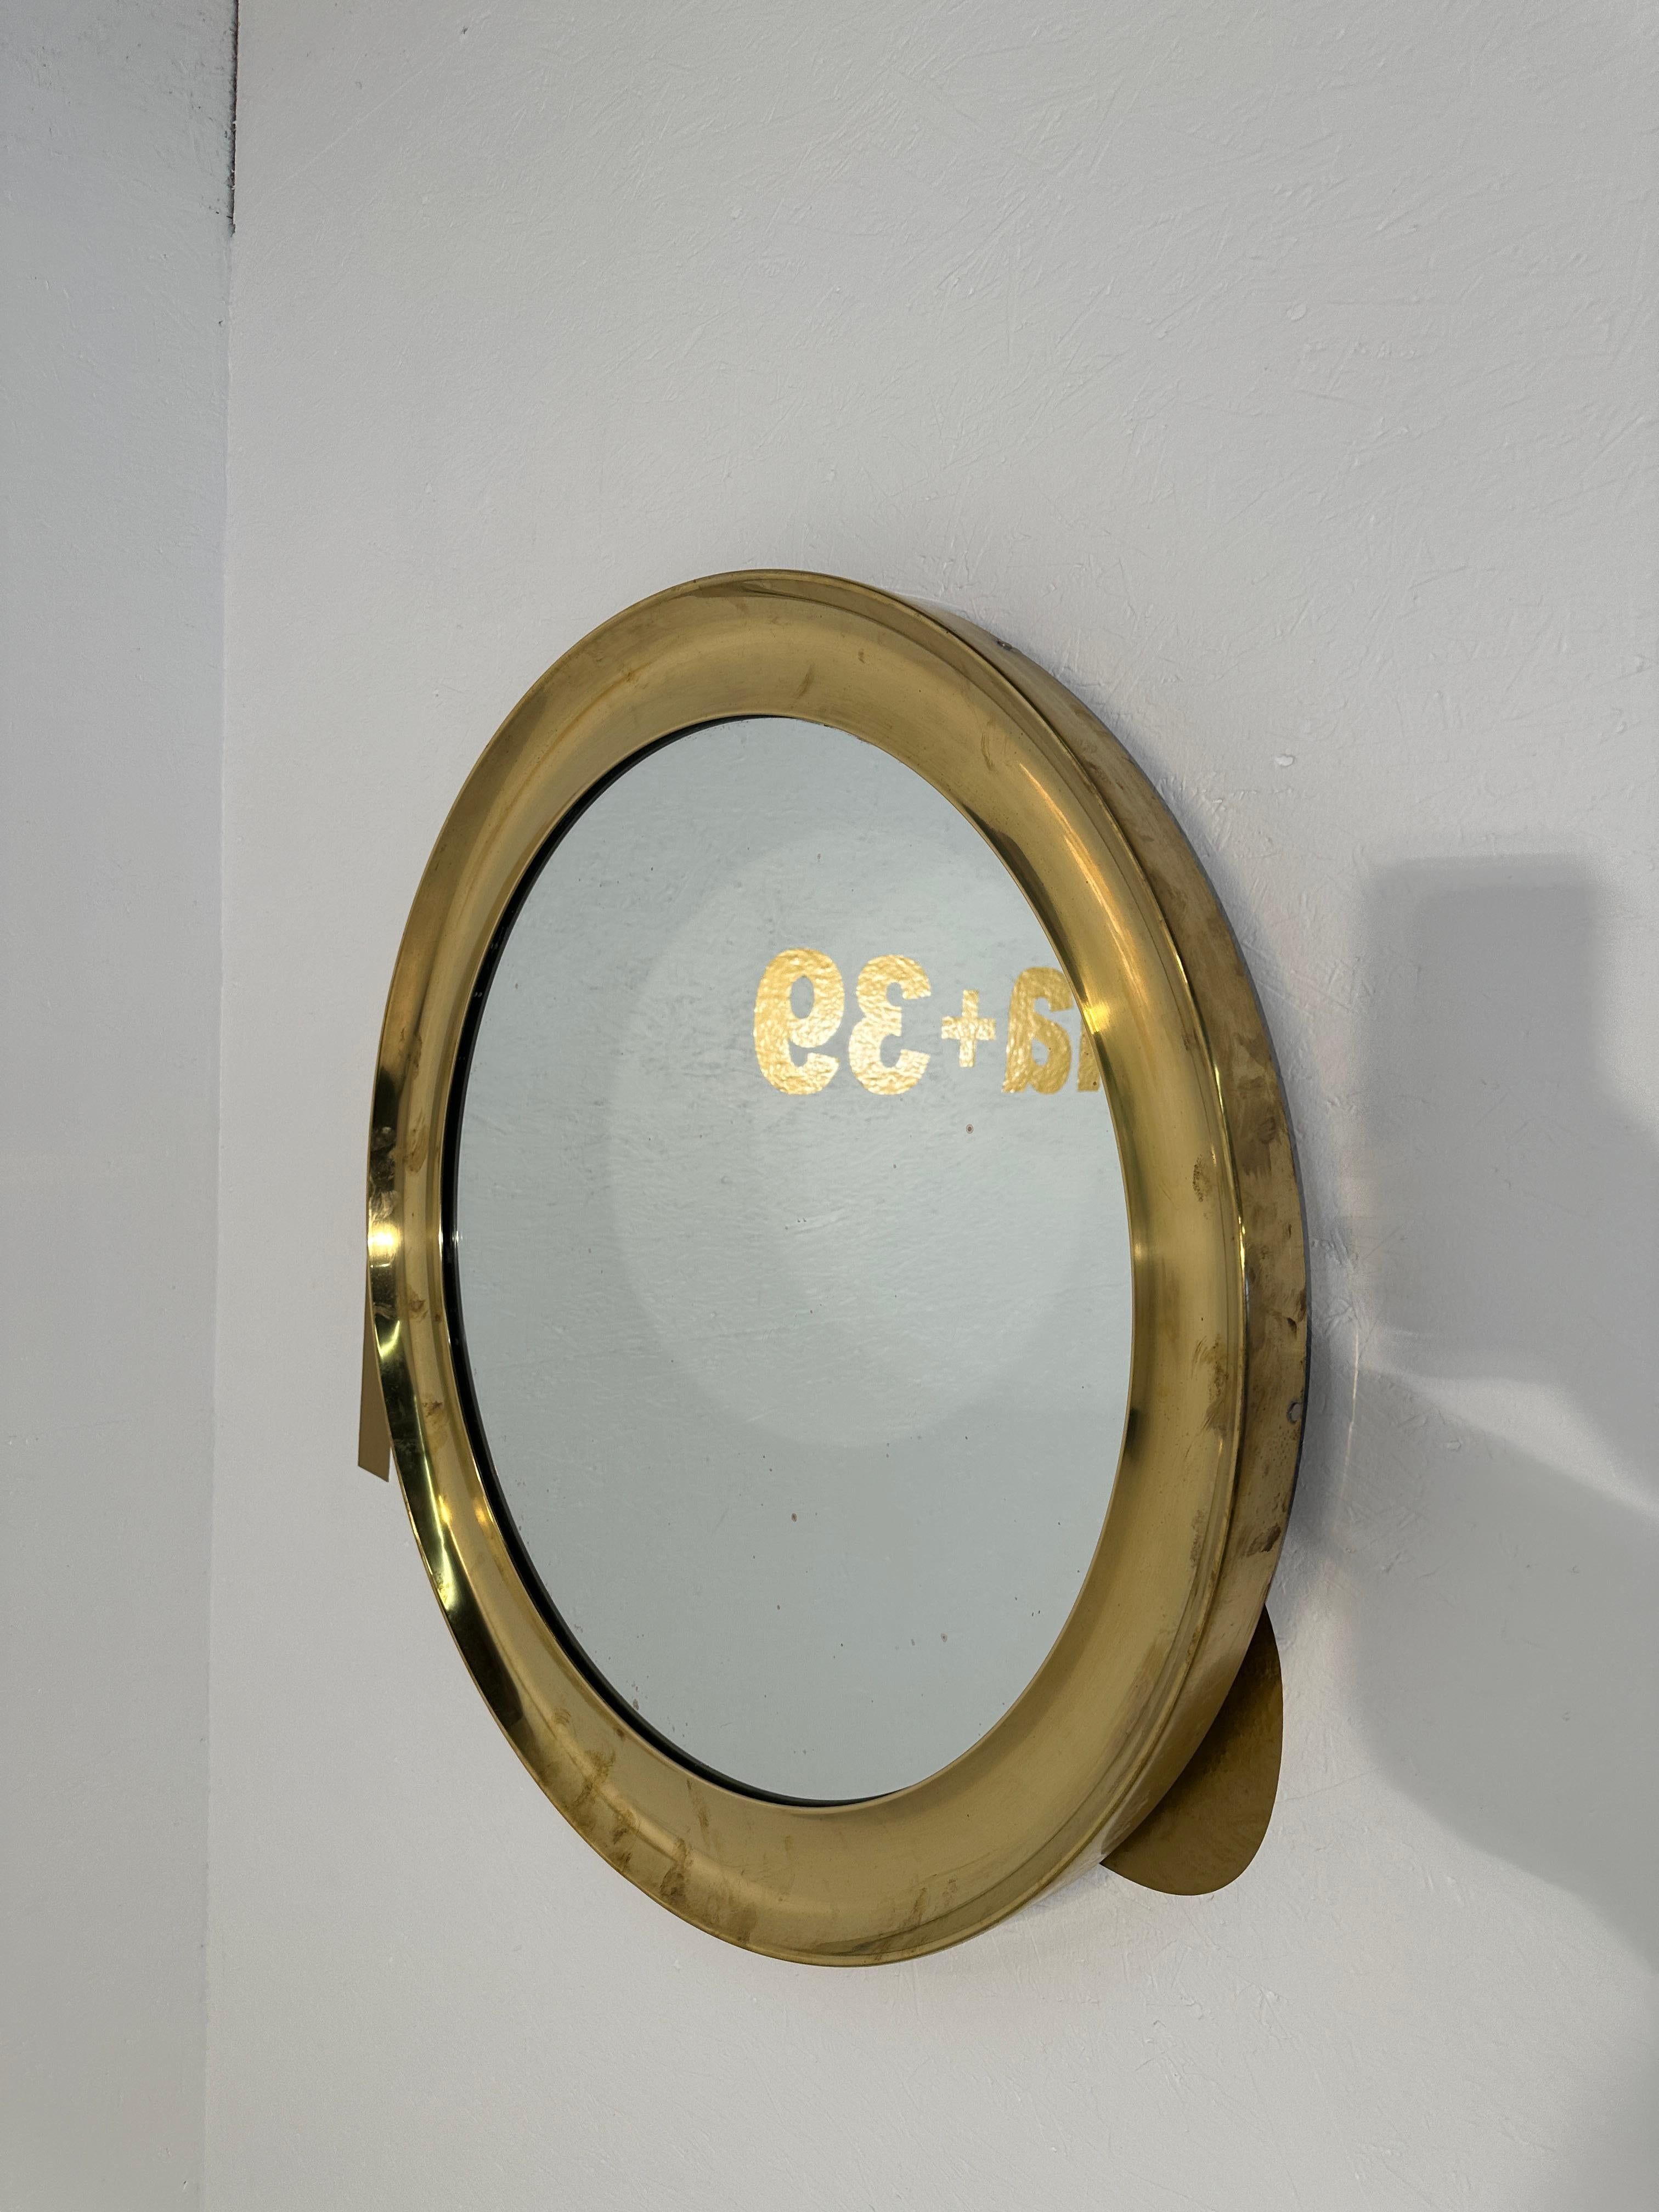 Ein exquisiter runder italienischer Vintage-Spiegel aus Messing aus den 1980er Jahren, der mit seinem klassischen Design und dem glänzenden Messingrahmen zeitlose Eleganz ausstrahlt. Dieser Spiegel, der den Charme italienischer Handwerkskunst